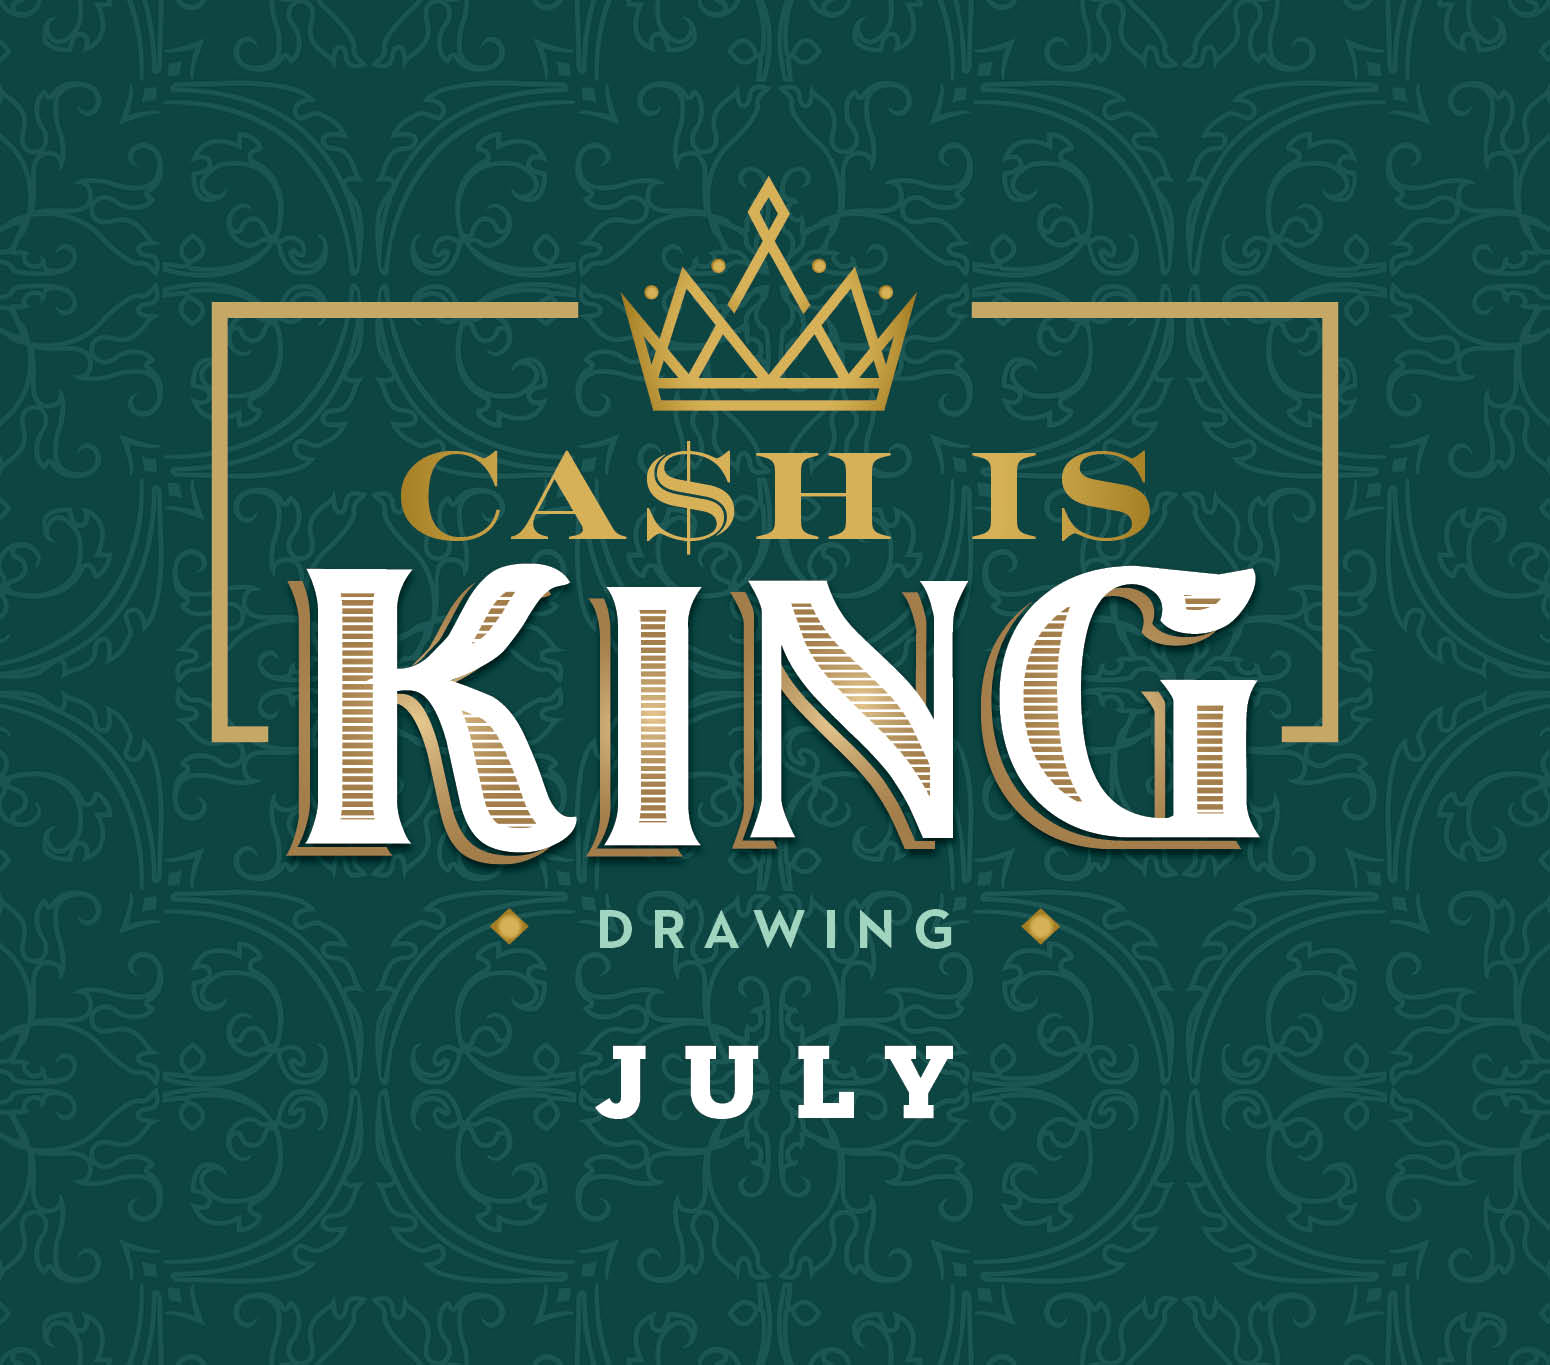 Cash is King July